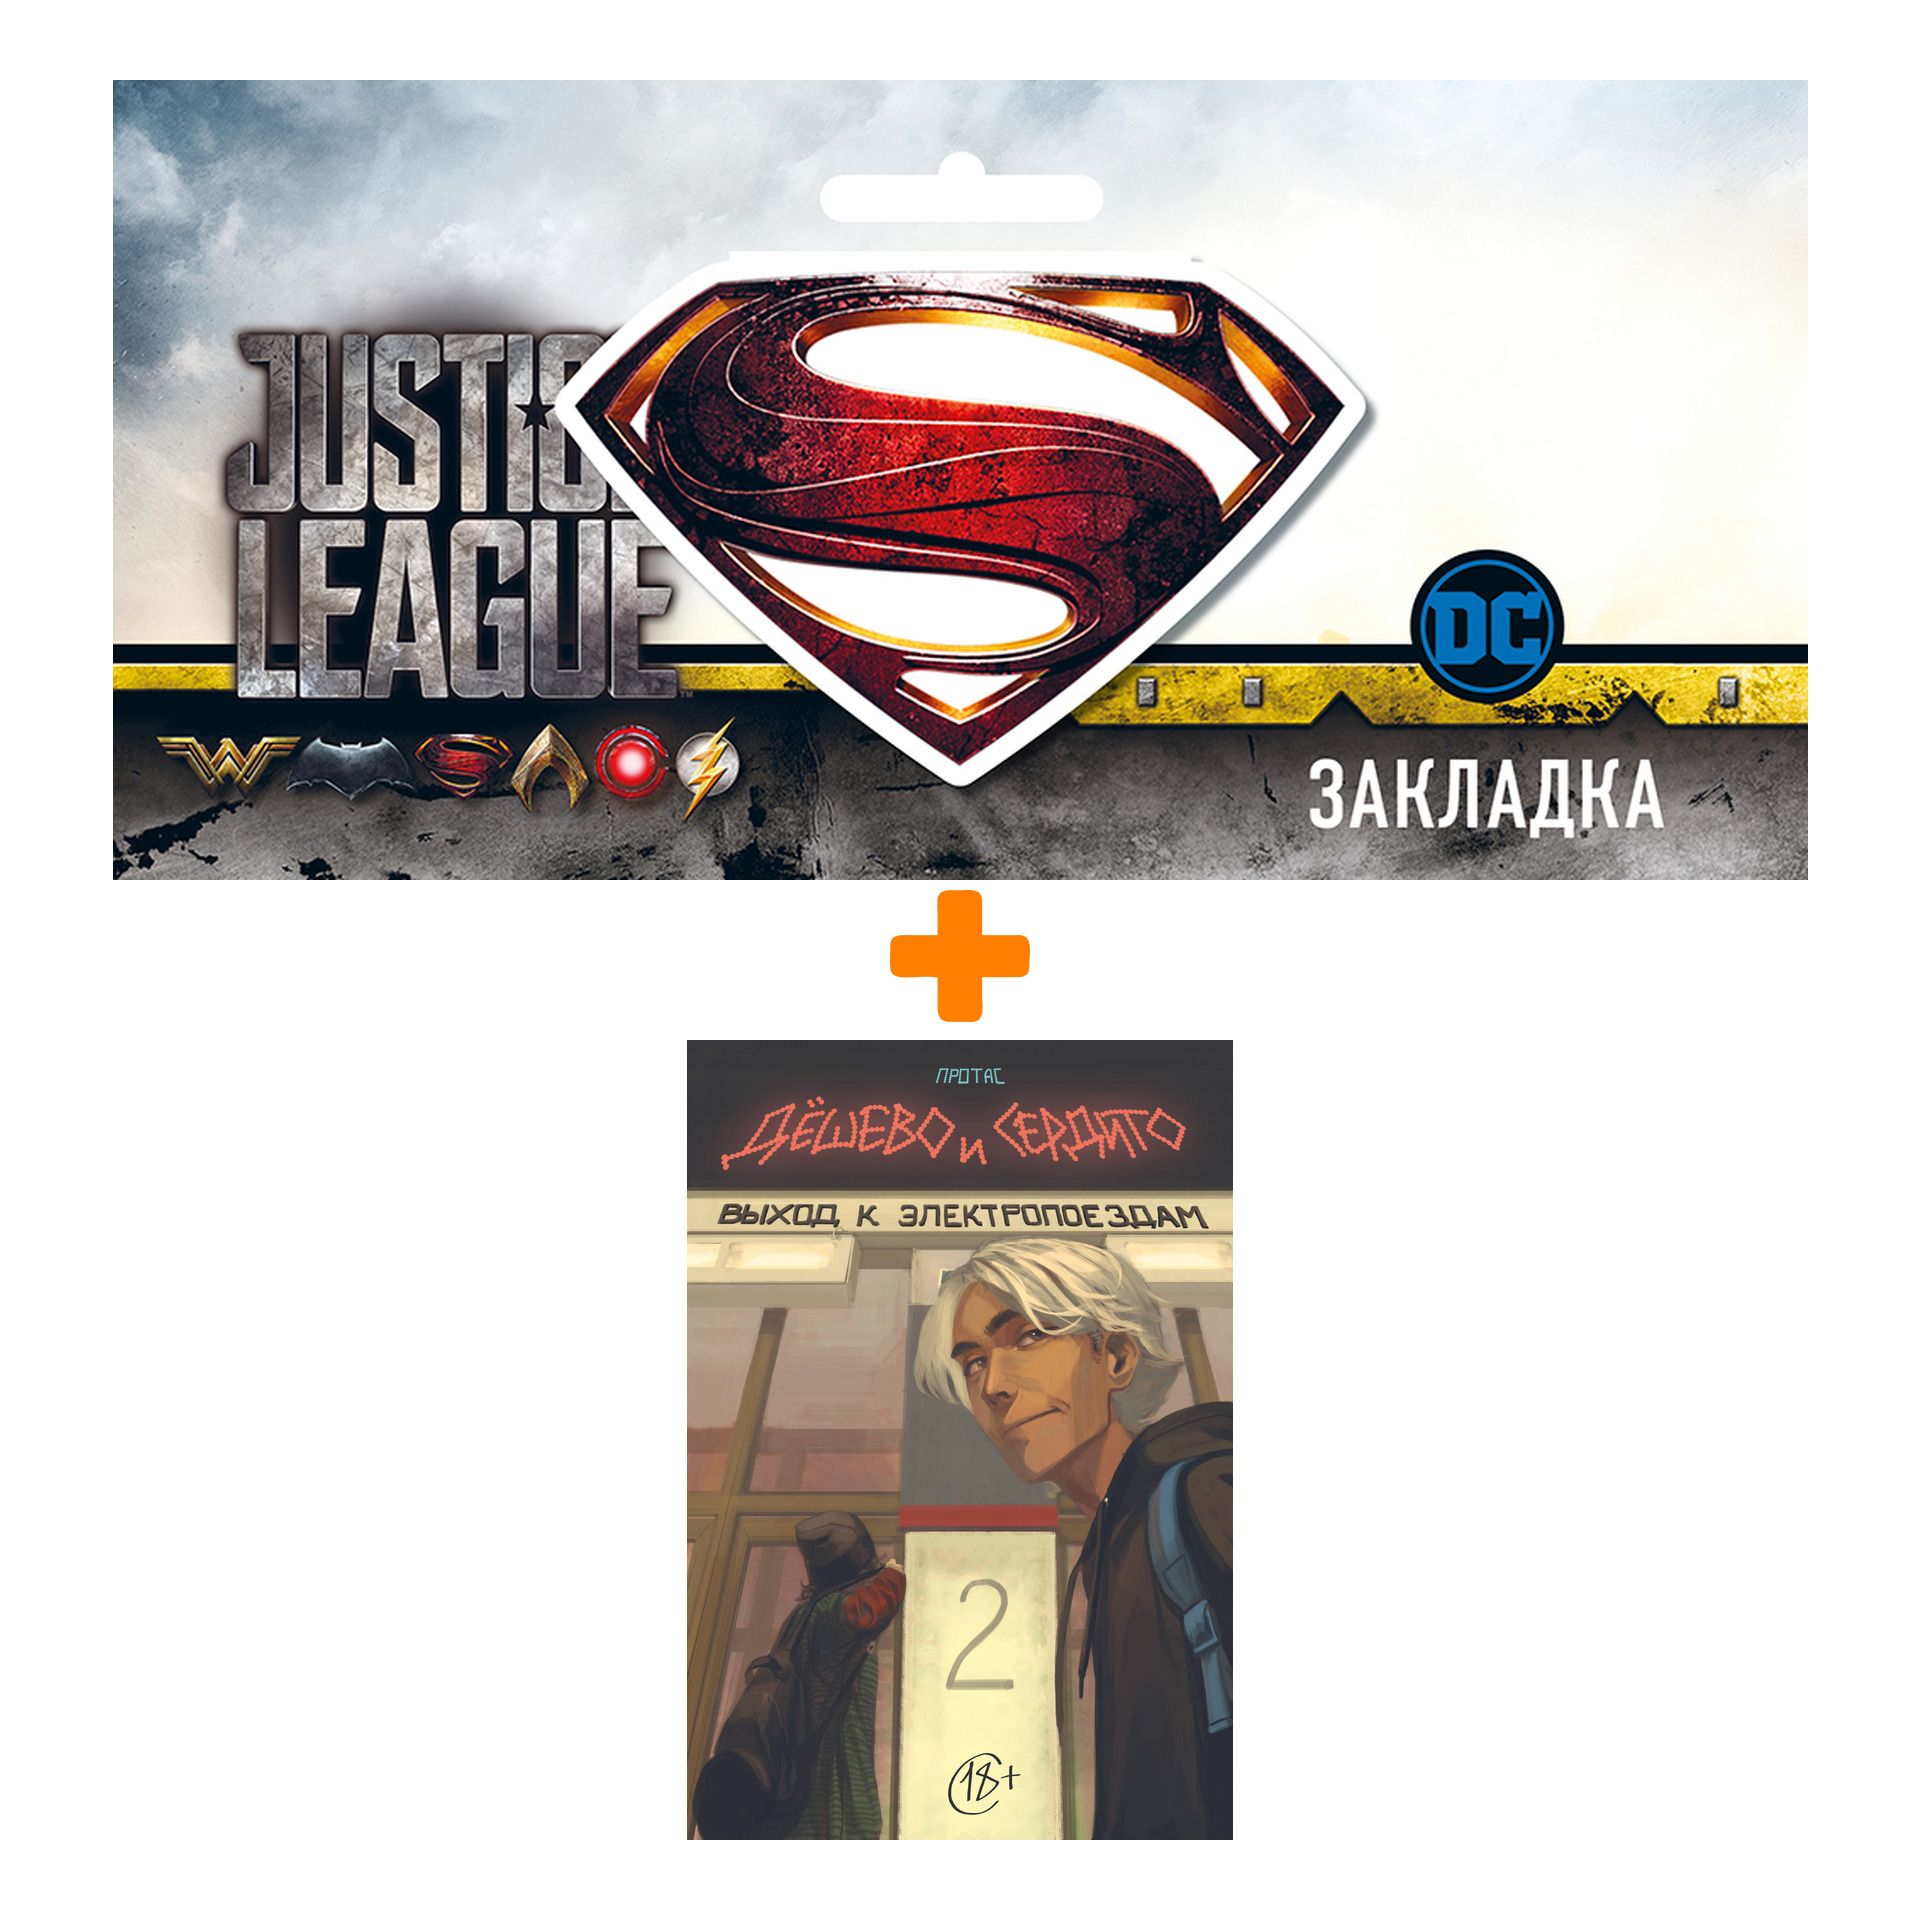 Набор Комикс Дёшево и сердито: Выход к электропоездам. Том 2 + Закладка DC Justice League Superman магнитная